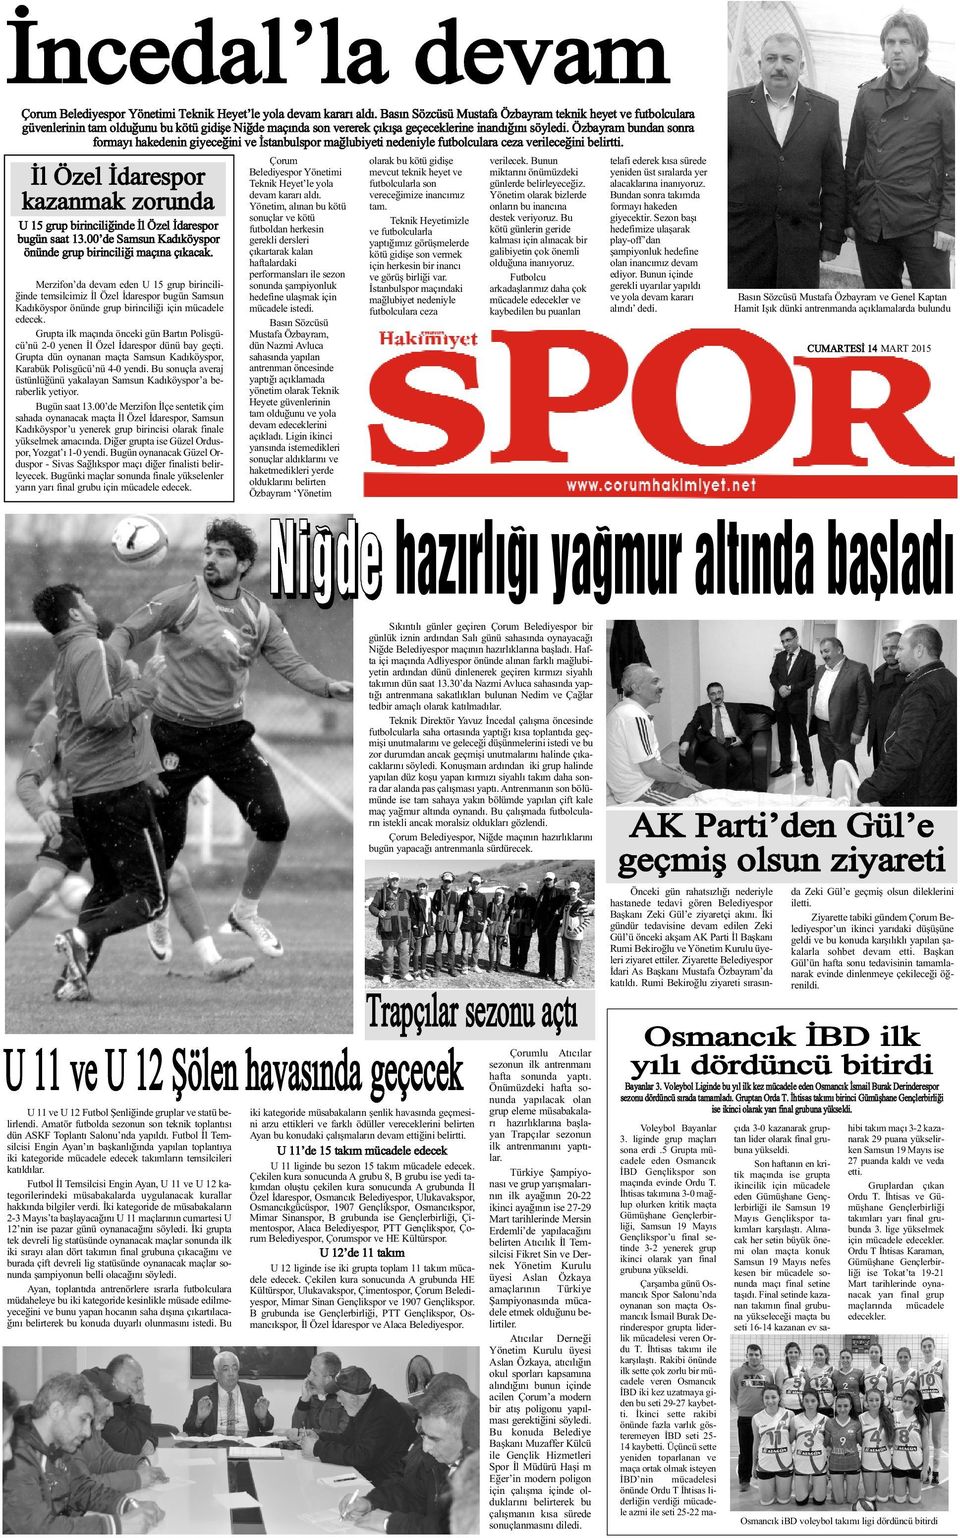 Özbayram bundan sonra formayý hakedenin giyeceðini ve Ýstanbulspor maðlubiyeti nedeniyle futbolculara ceza verileceðini belirtti.